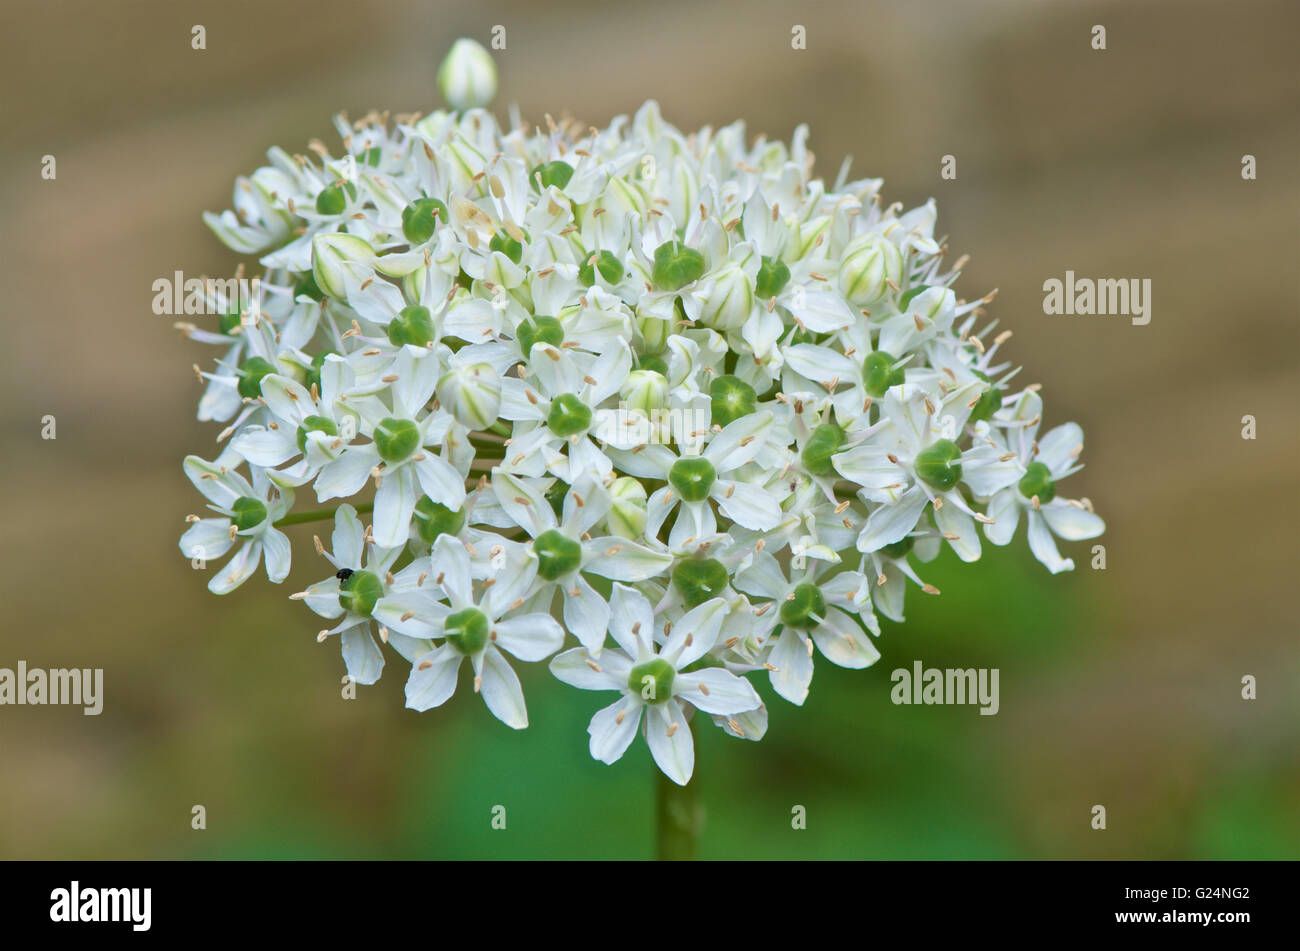 Allium multibulbosum nigrum in full bloom Stock Photo